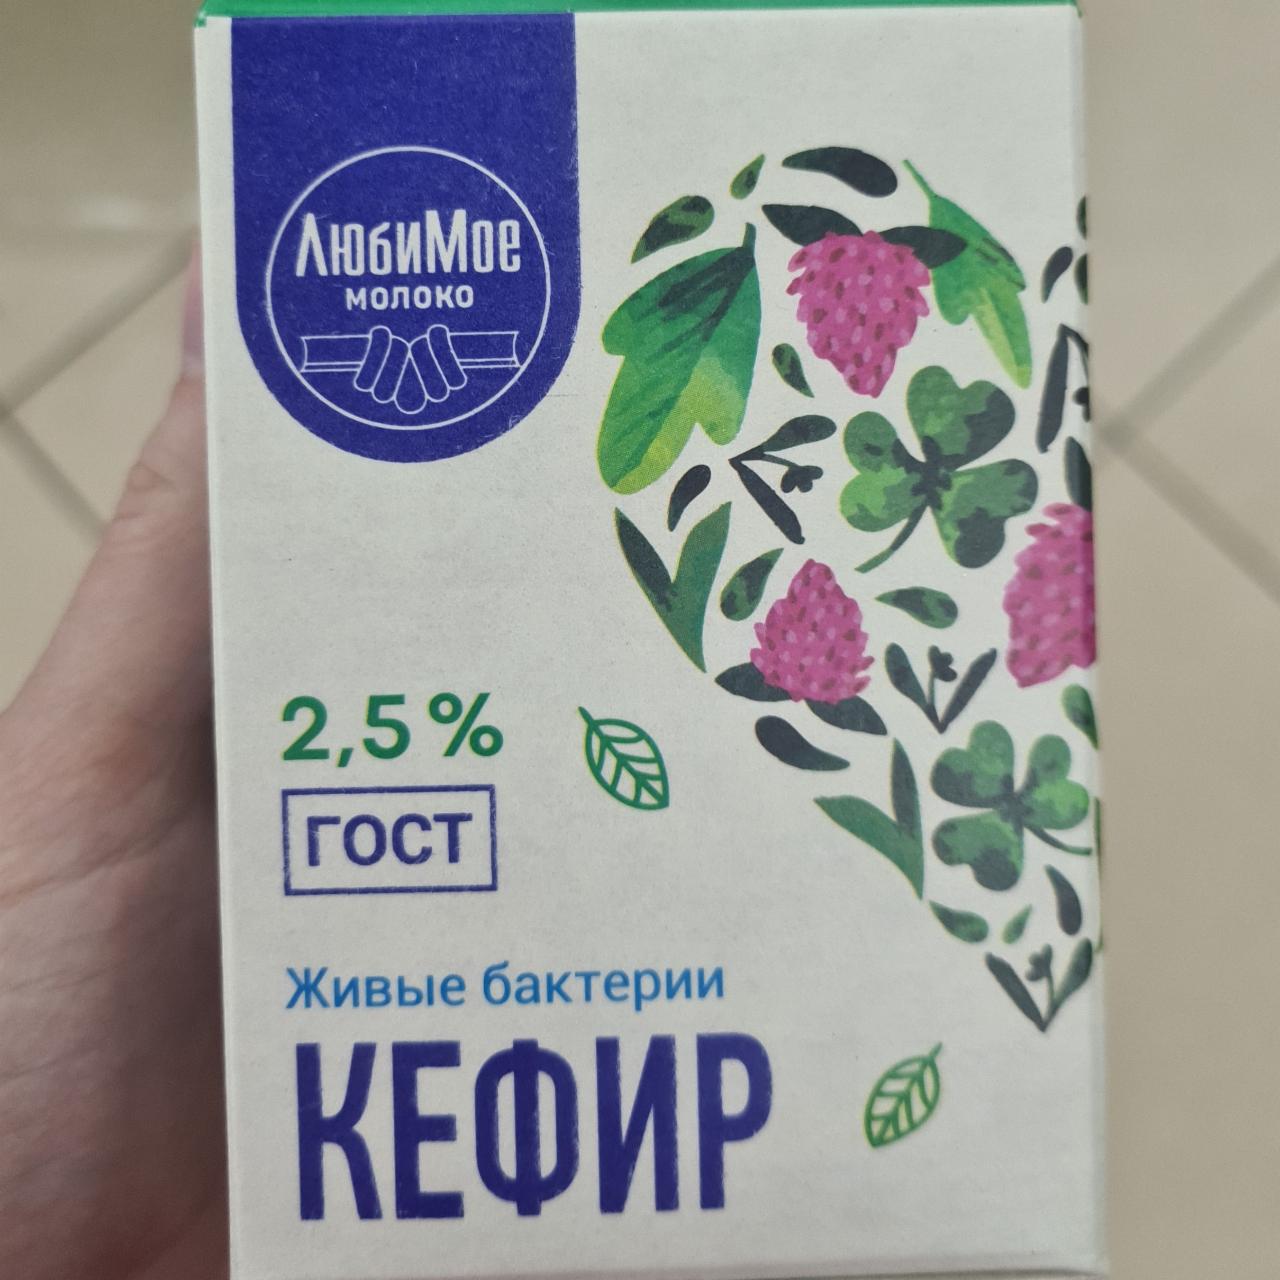 Фото - Кефир 2.5% ЛюбиМое молоко